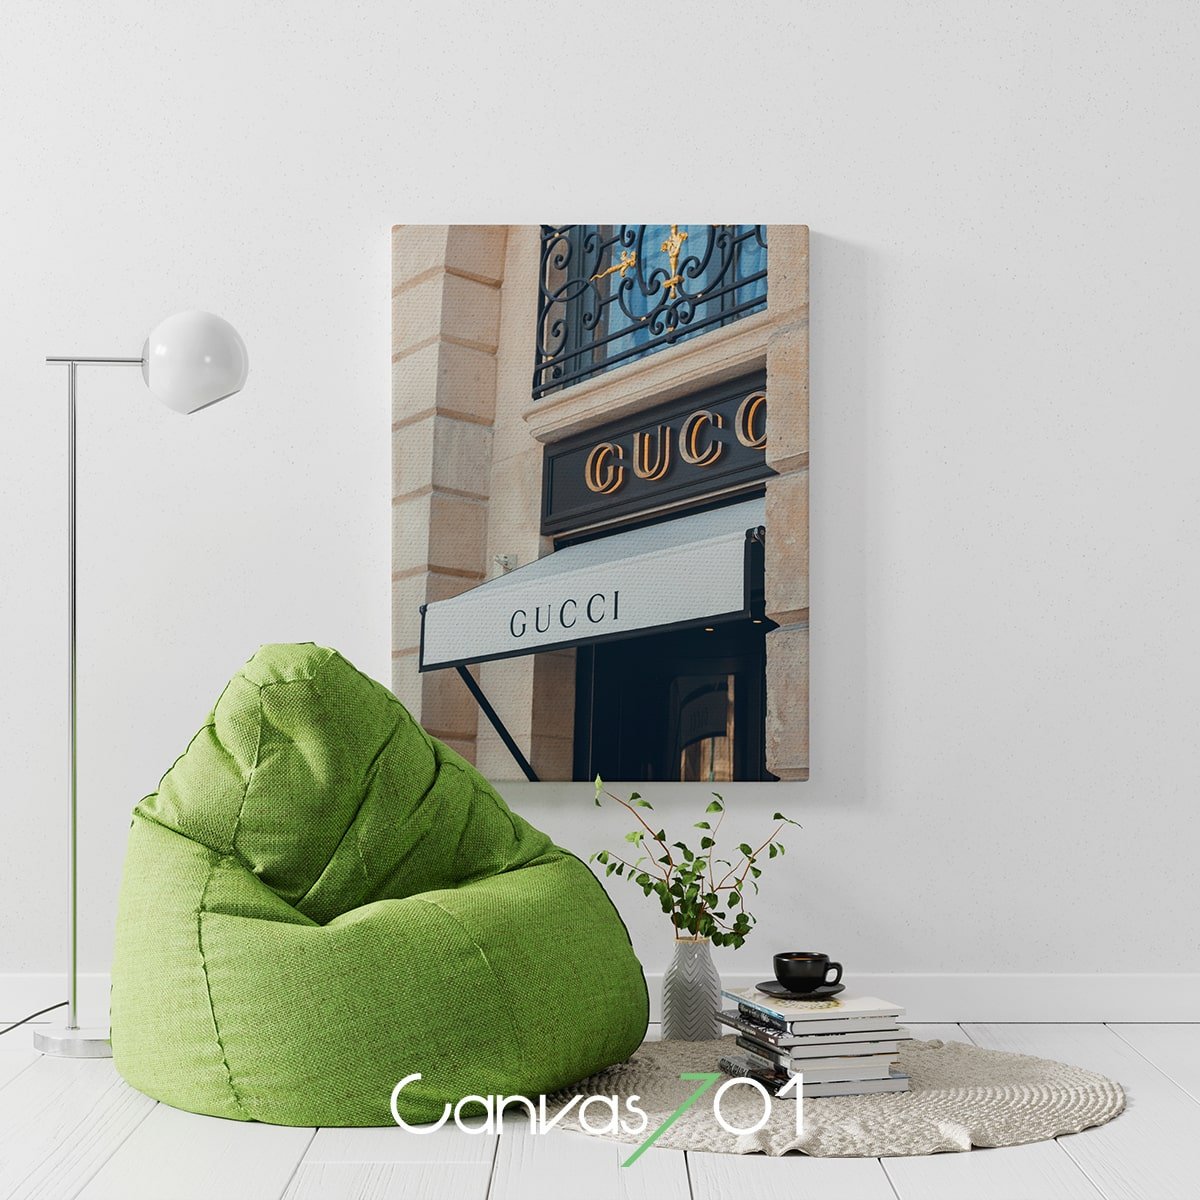 Canvas701 | Gucci Mağaza Önü Kanvas Tablo